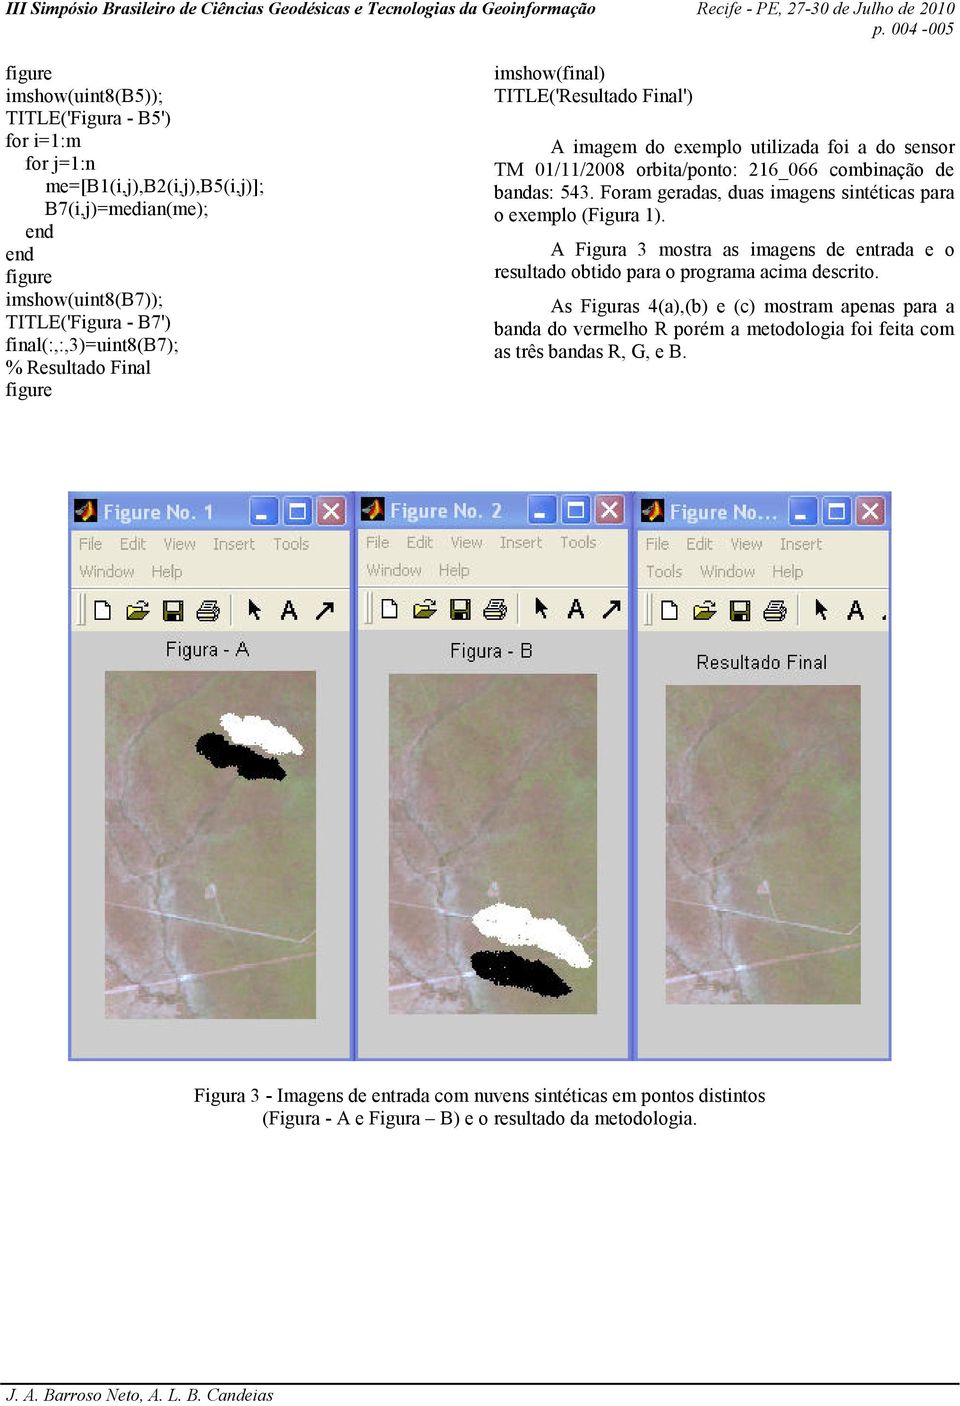 Foram geradas, duas imagens sintéticas para o exemplo (Figura 1). A Figura 3 mostra as imagens de entrada e o resultado obtido para o programa acima descrito.